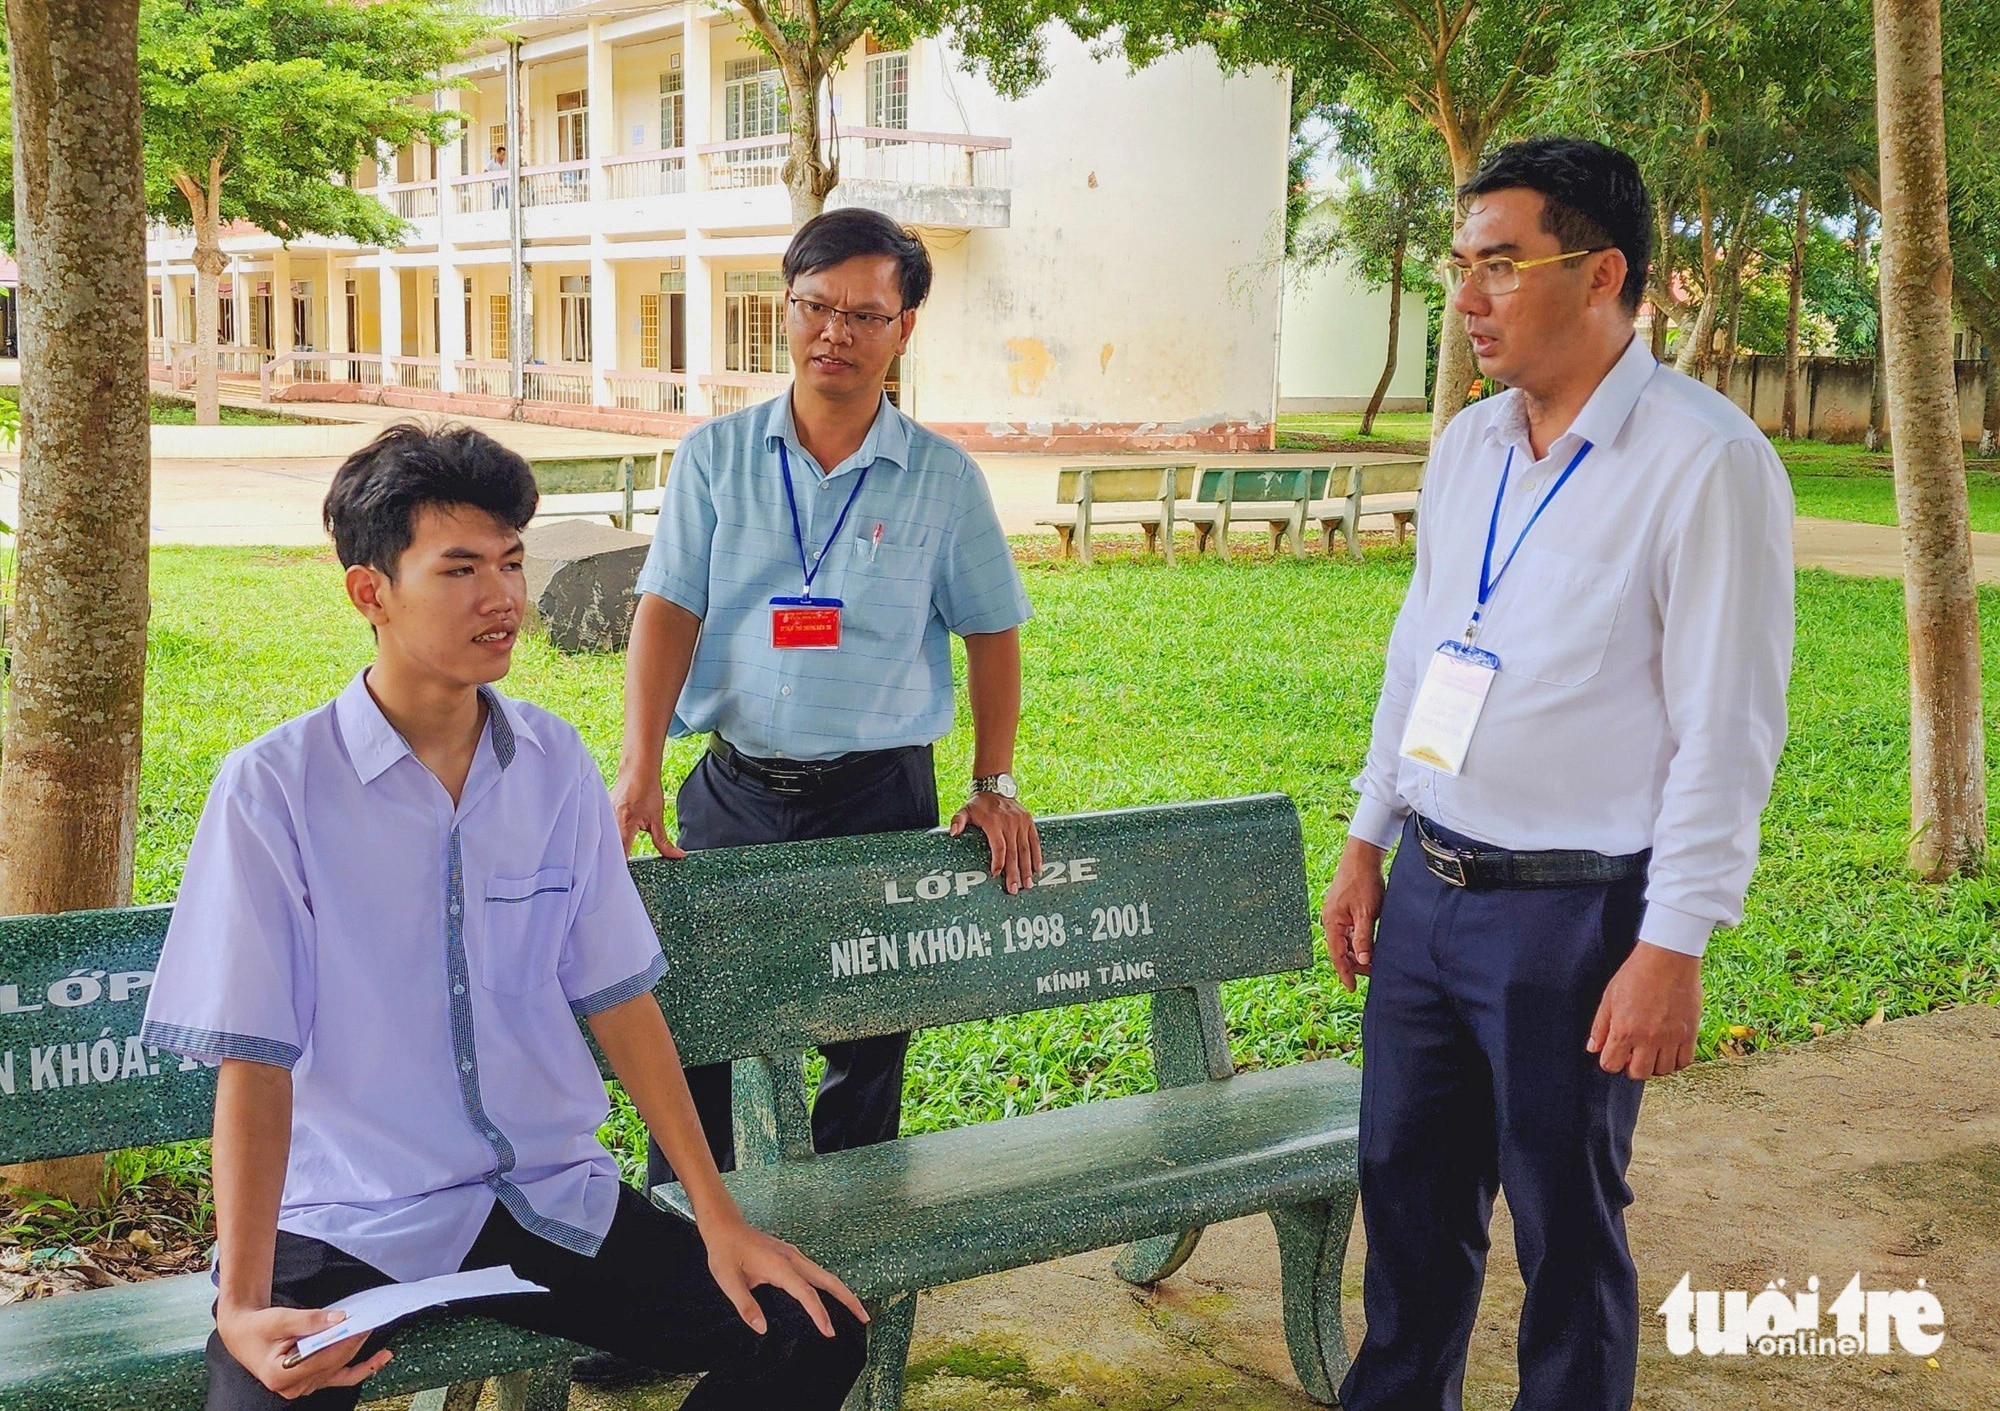 Thí sinh Phạm Ân, học sinh Trường THPT Trần Hưng Đạo (dự thi tại điểm thi THPT Đắk Mil) được tạo điều kiện để thi tốt nhất, đảm bảo sức khỏe - Ảnh: TÂM AN